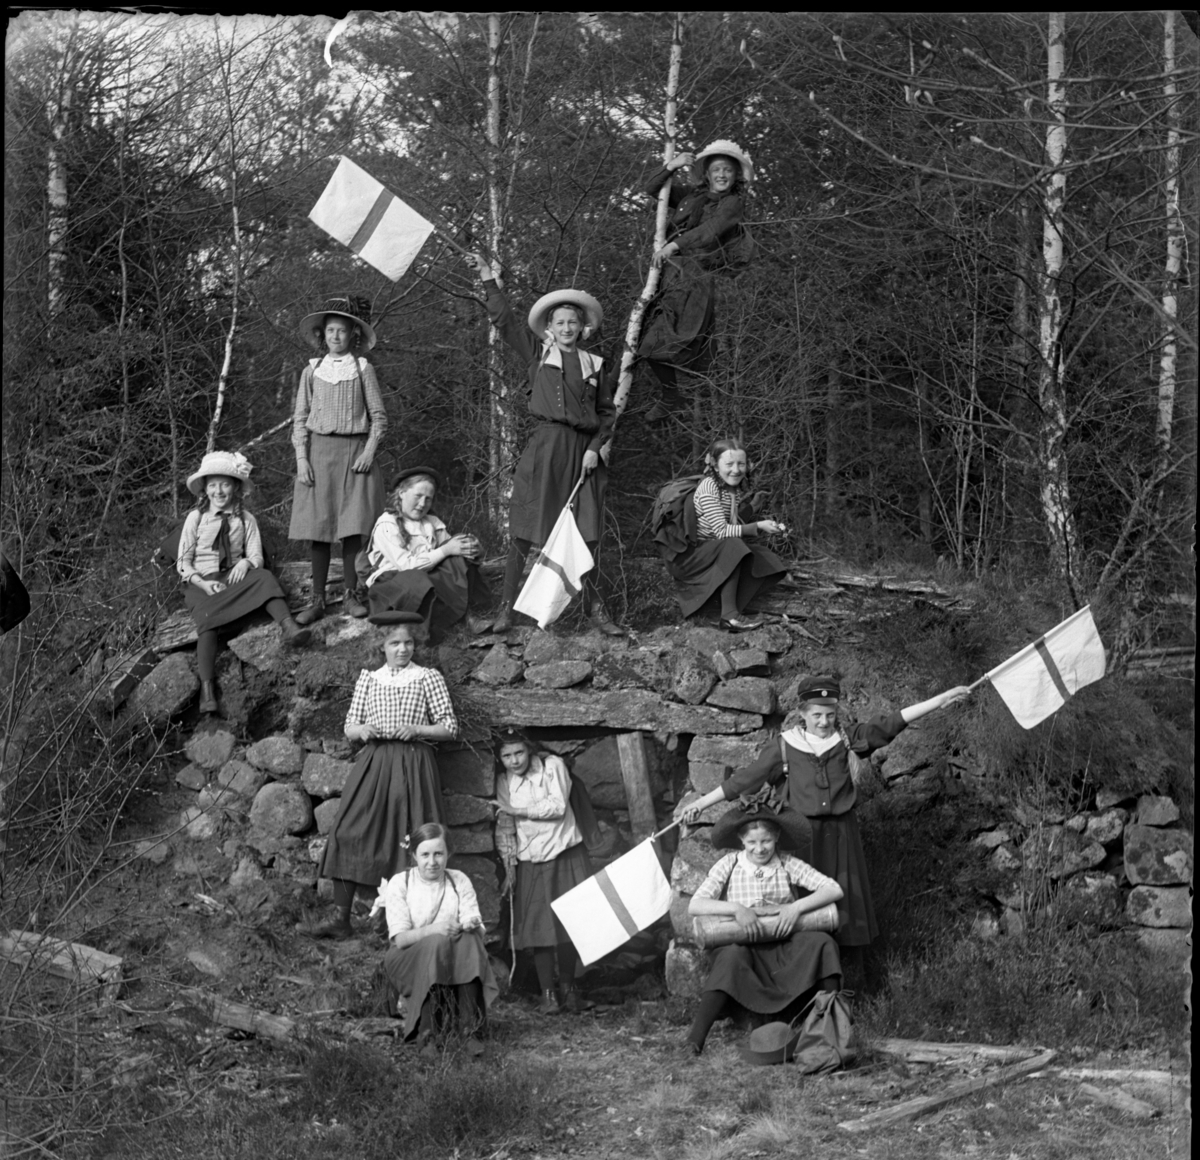 'Gruppbild med 11 flickor samlade vid en jordkällare byggd av stenblock. Iklädda hatt, keps, kjol. Viftande med slags flaggor. ::  :: Ingår i serie med fotonr. 5415:1-10.'